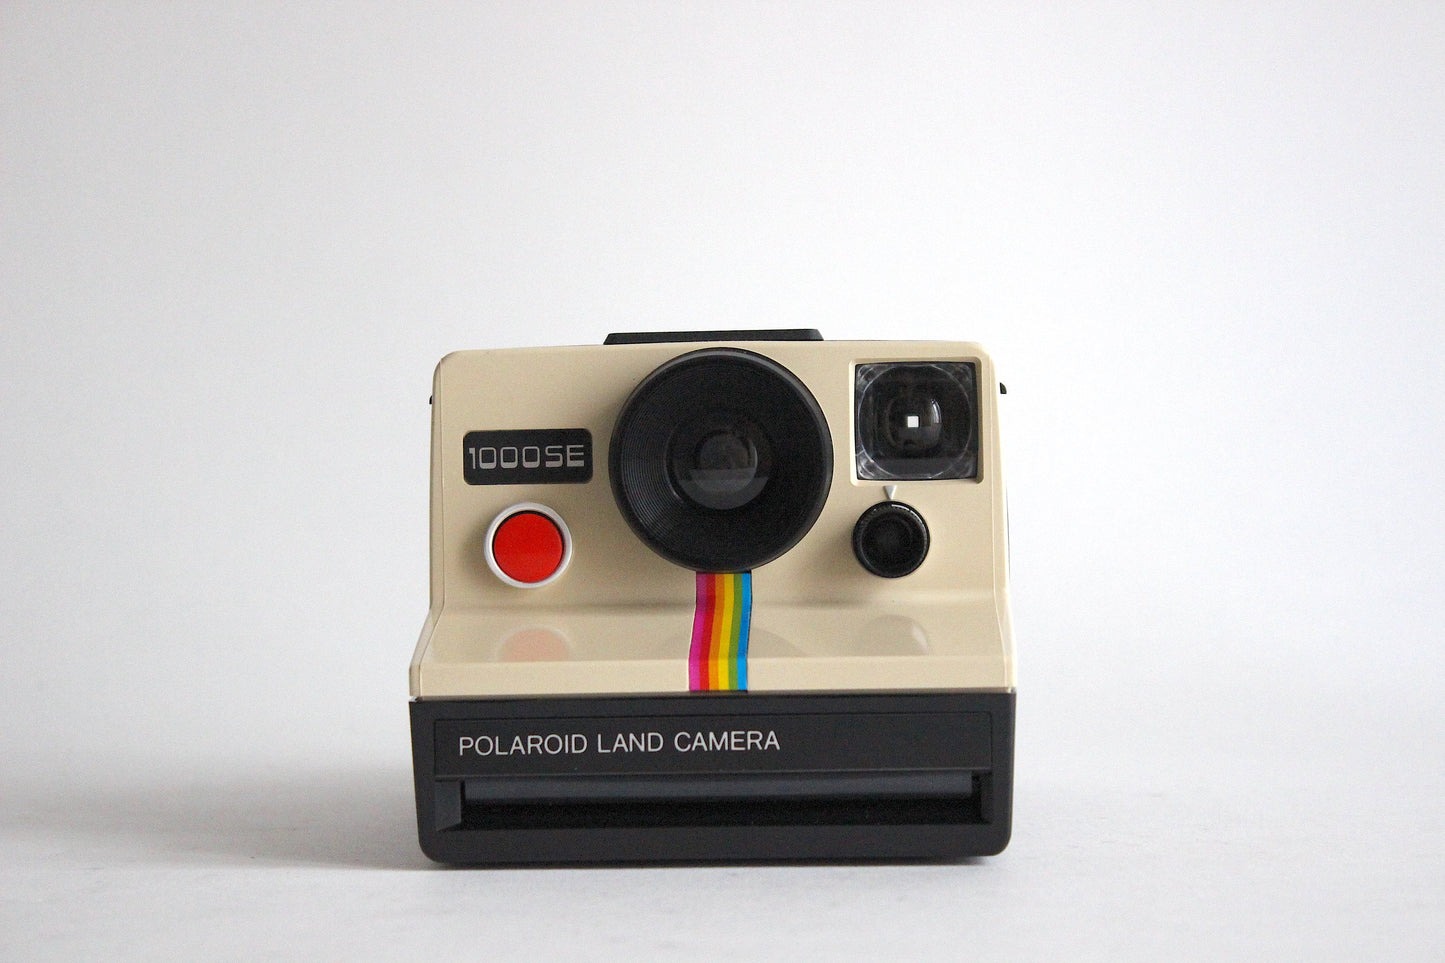 Polaroid 1000SE Land Camera special edition 1976 - orange button - Includes original box